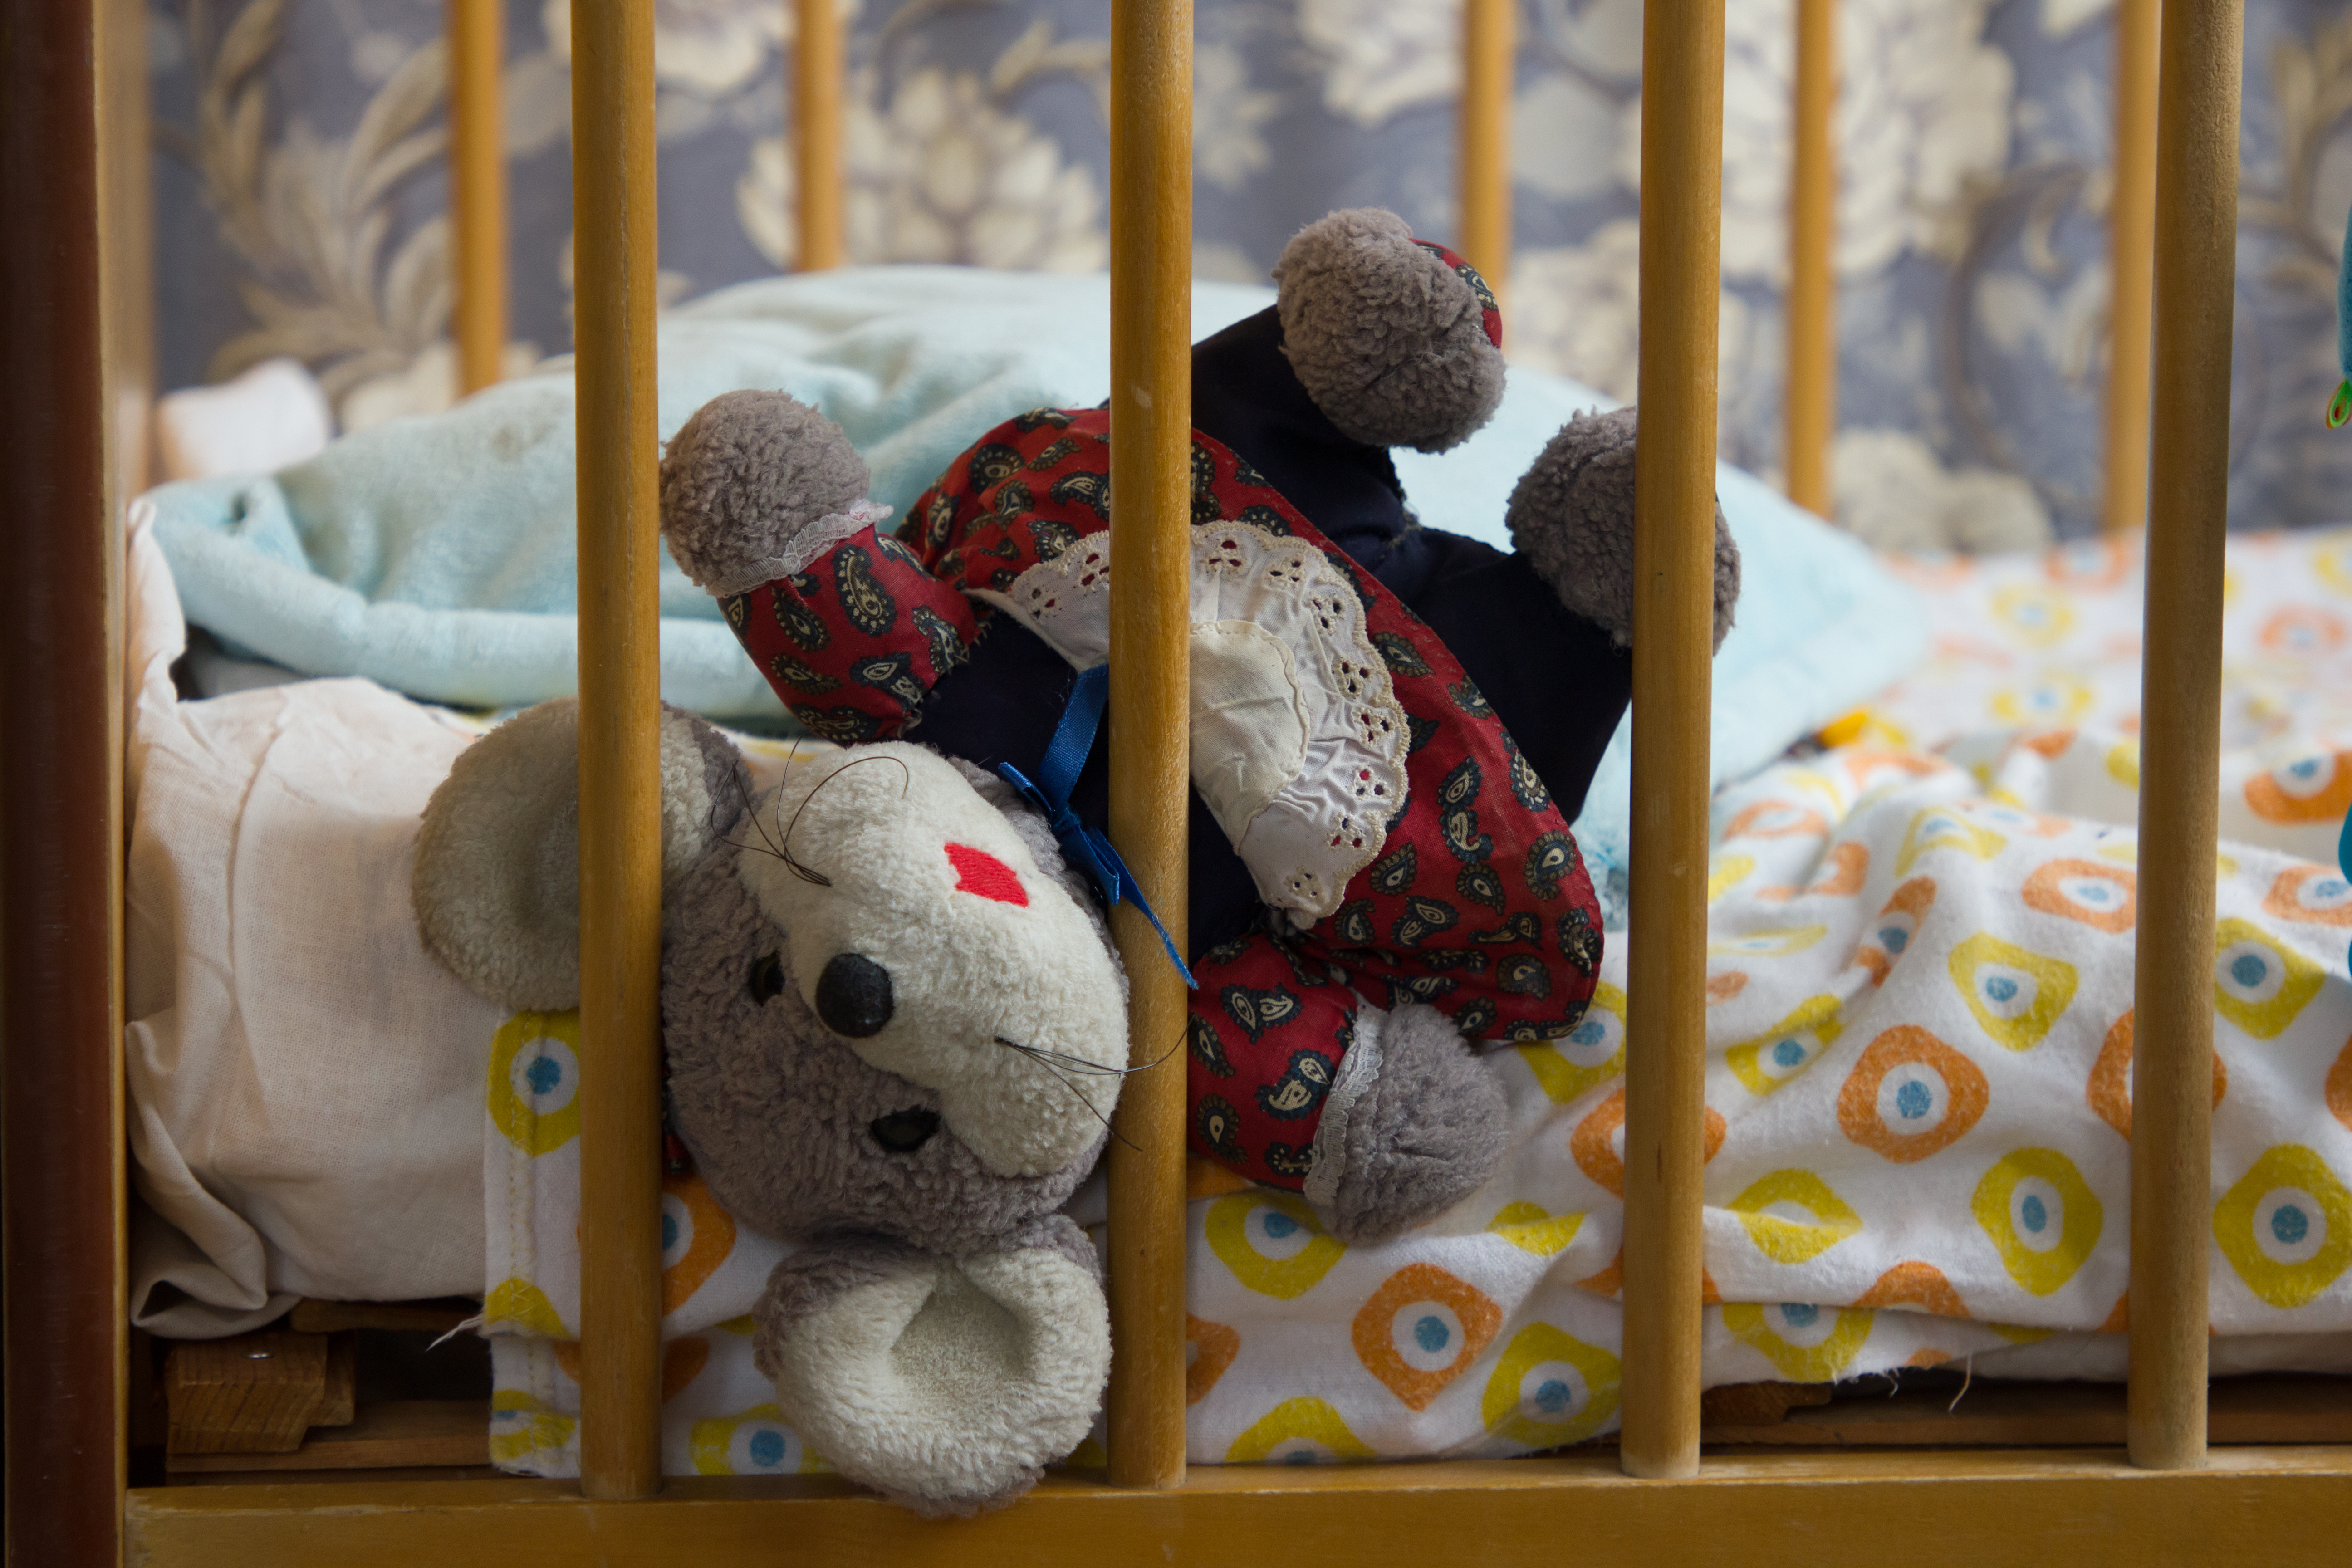 Ein Teddybär in einem Kinderbett | Quelle: Shutterstock